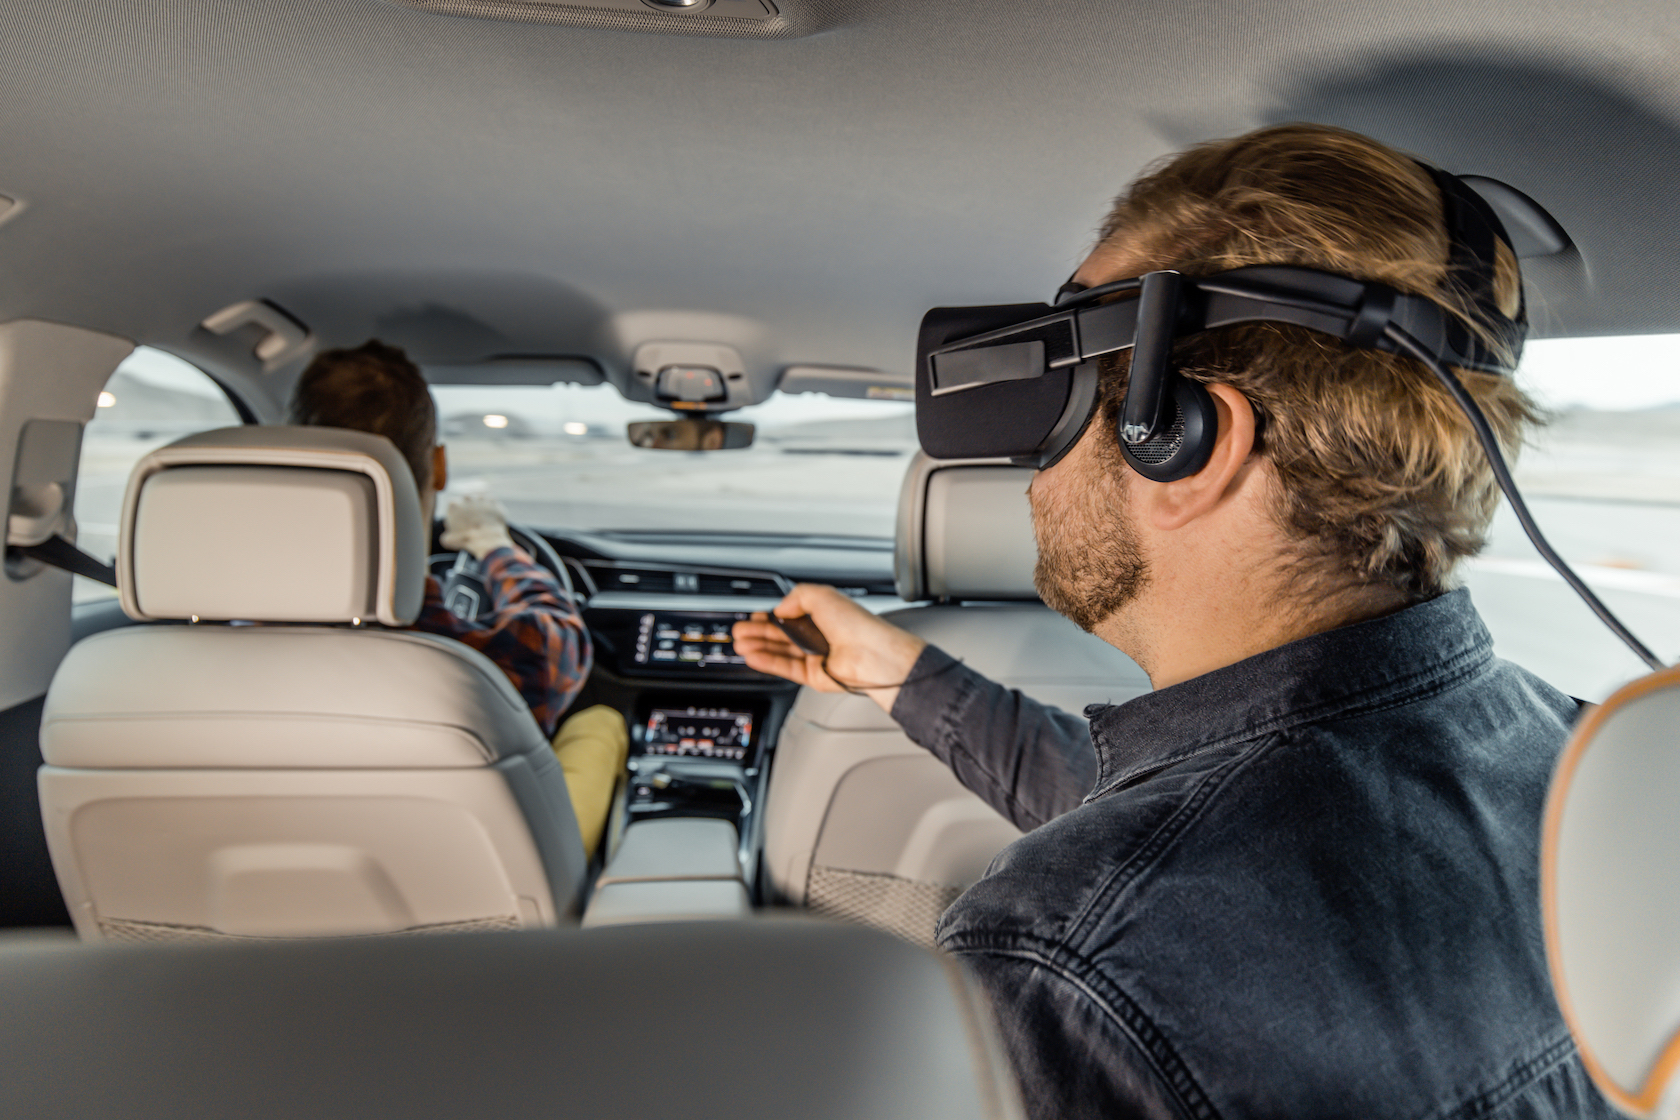 奧迪漫威聯手打造 汽車內VR娛樂系統Holoride體驗及展望 科技 第2張